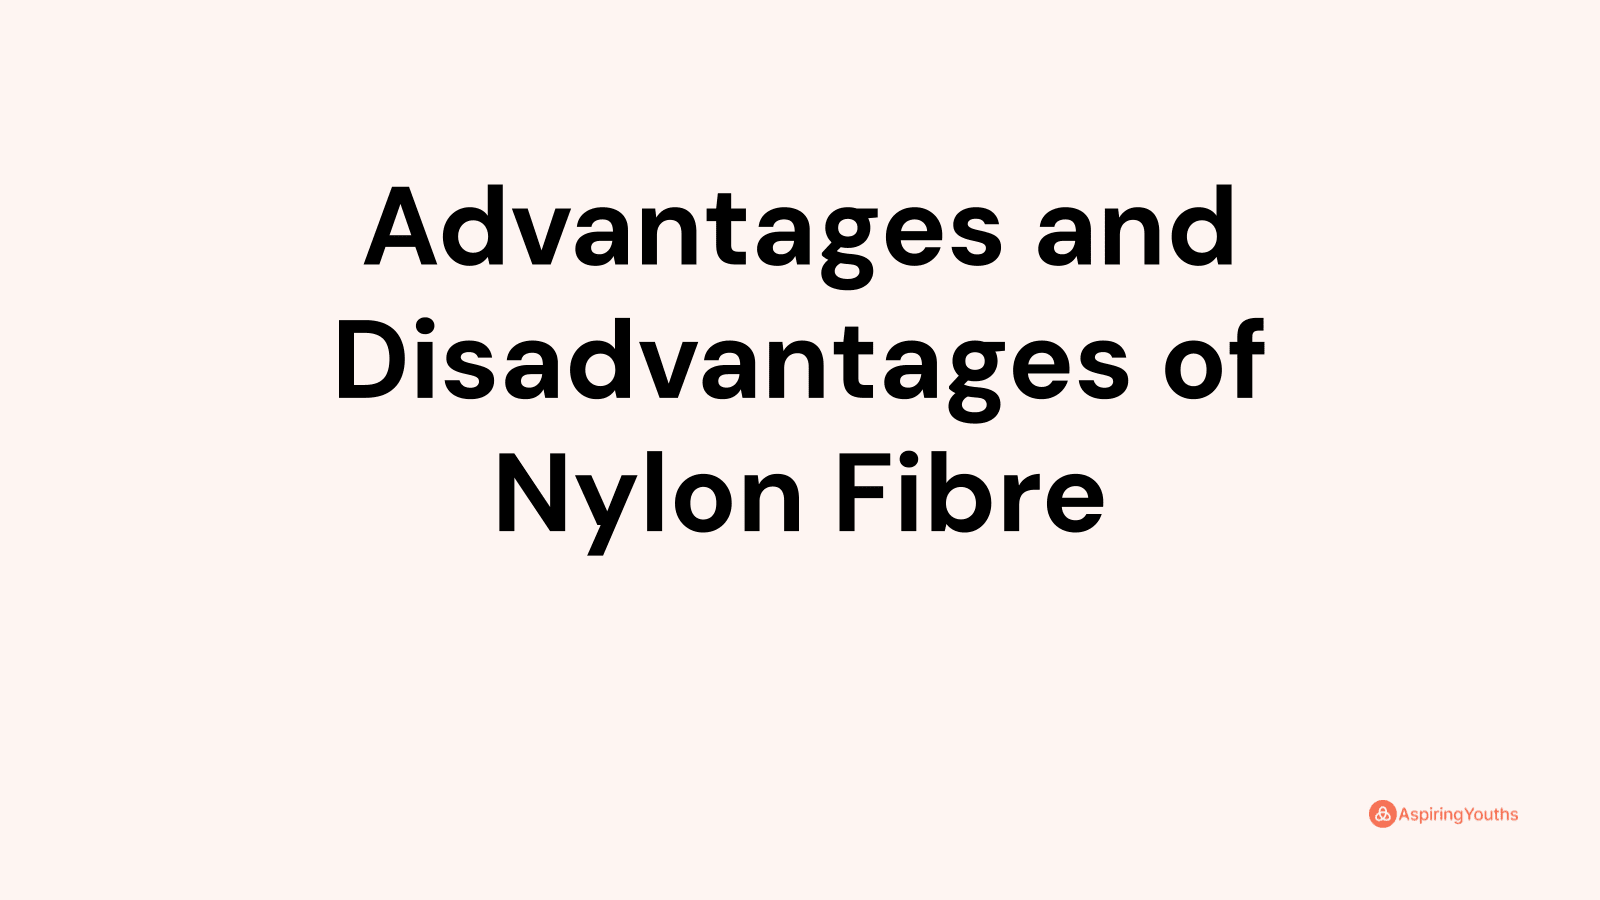 Advantages and disadvantages of Nylon Fibre